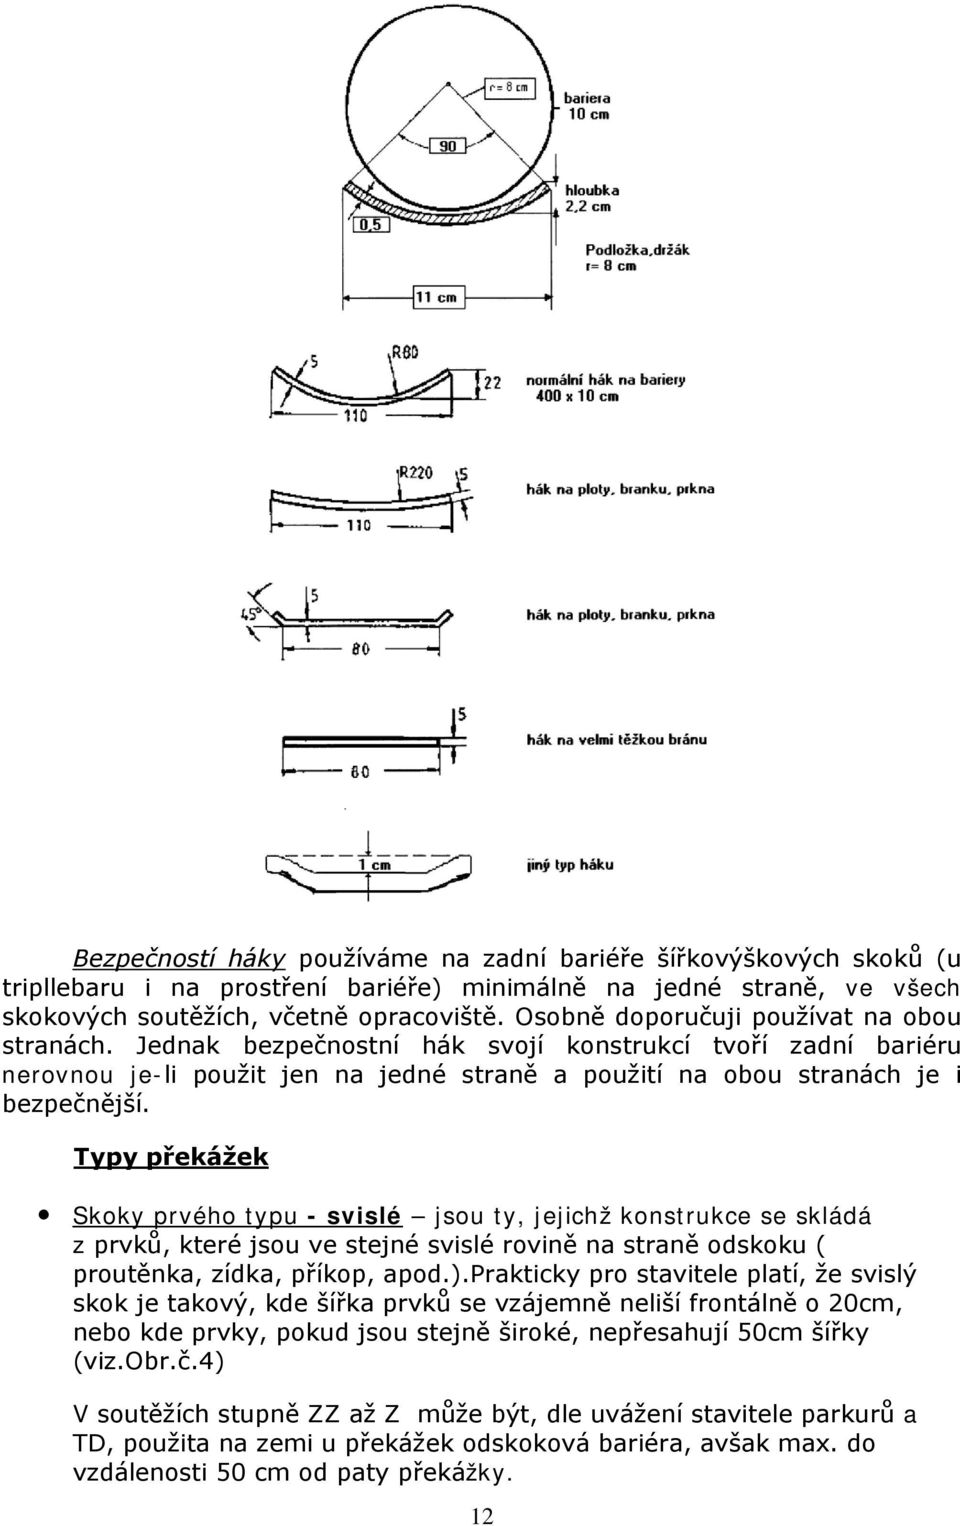 Typy překážek Skoky prvého typu - svislé jsou ty, jejichž konstrukce se skládá z prvků, které jsou ve stejné svislé rovině na straně odskoku ( proutěnka, zídka, příkop, apod.).